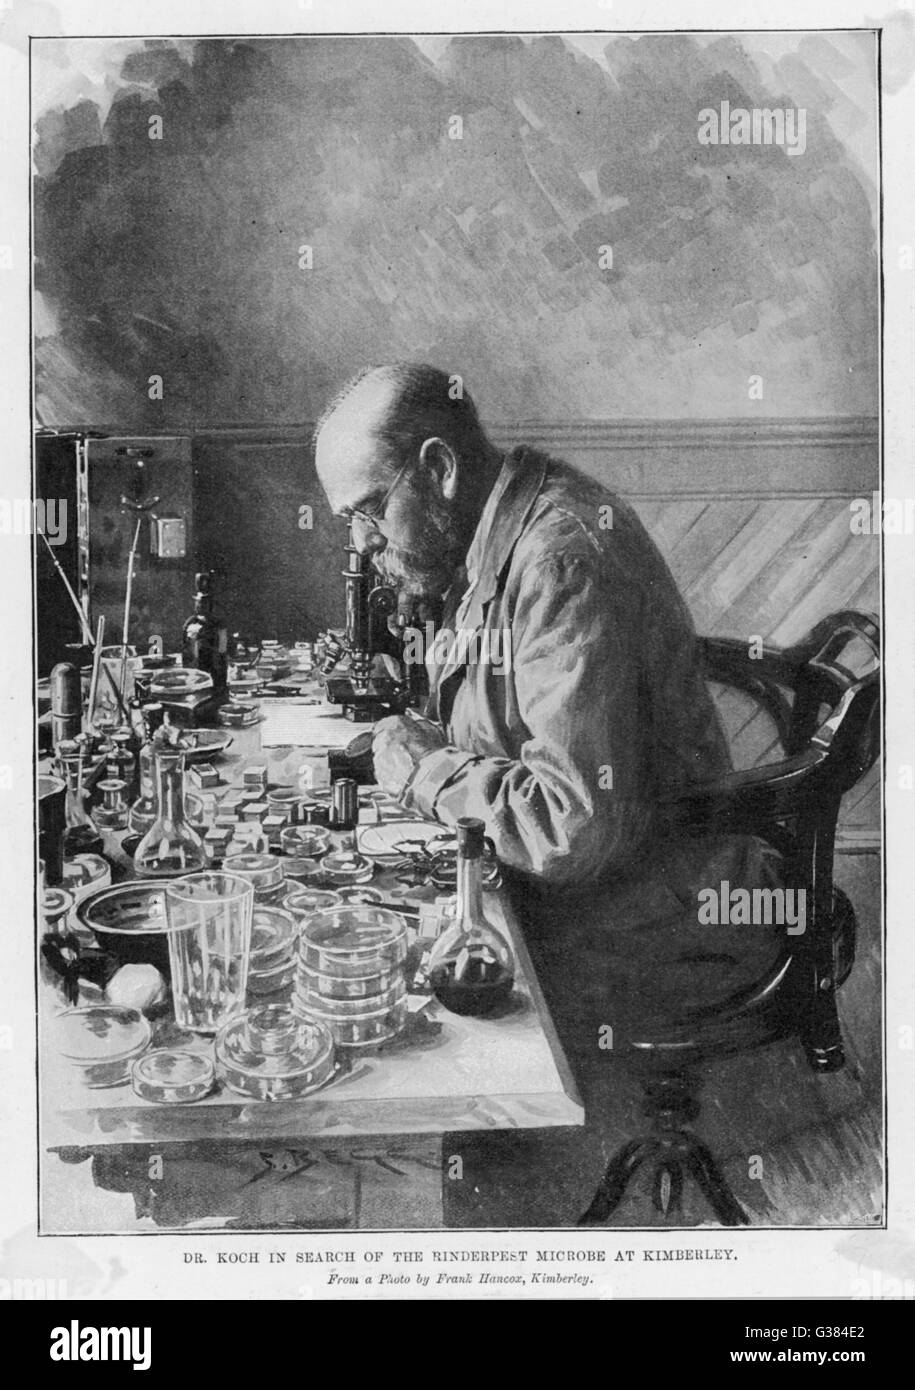 HEINRICH HERMANN ROBERT KOCH deutsche Arzt und Pionier Bakteriologen auf der Suche nach der Rinderpest Mikrobe Kimberley-Zeitpunkt: 1843-1910 Stockfoto